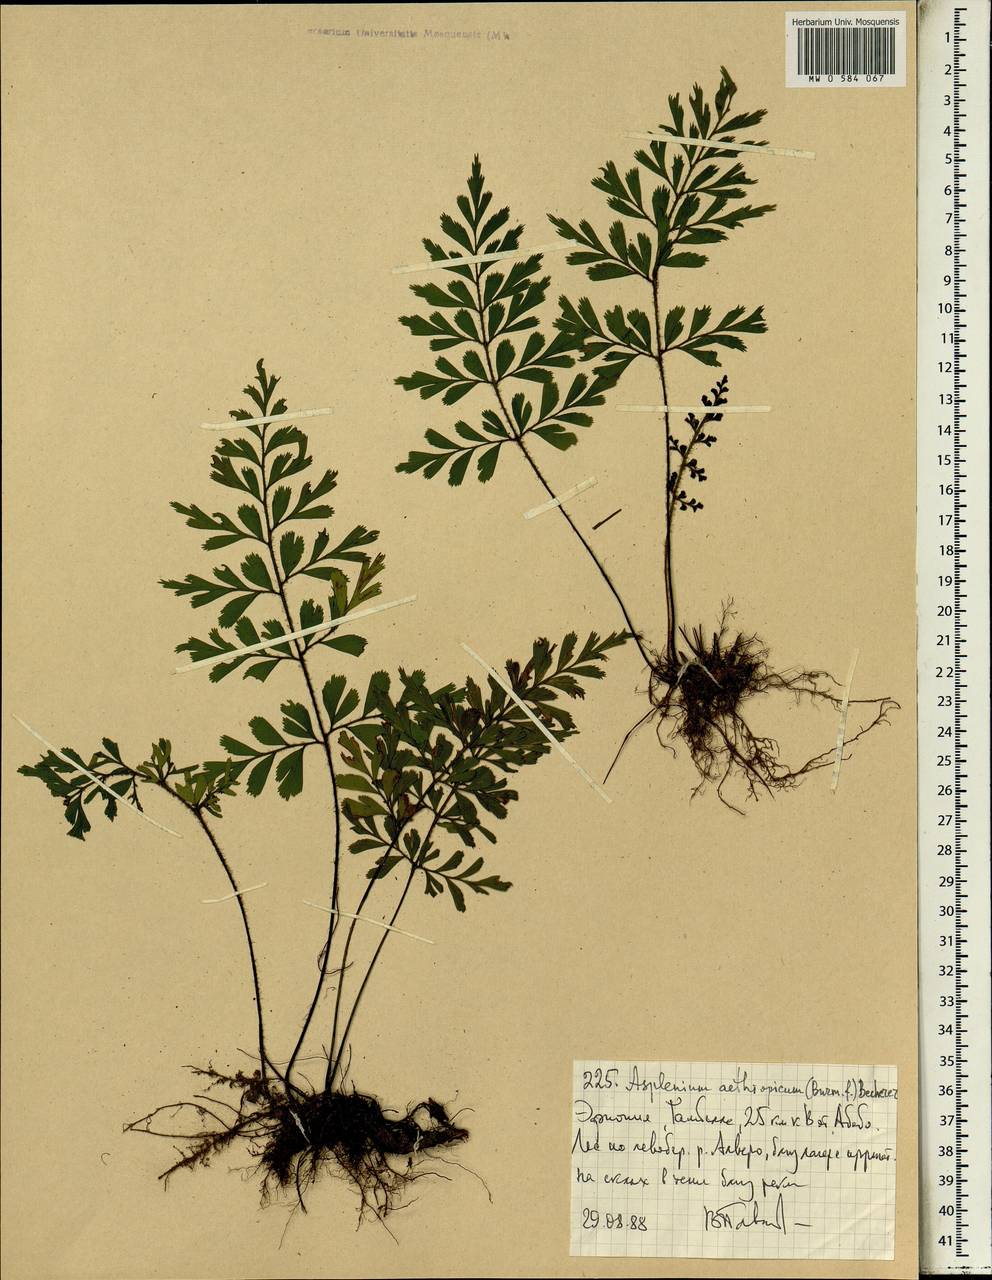 Asplenium aethiopicum, Africa (AFR) (Ethiopia)